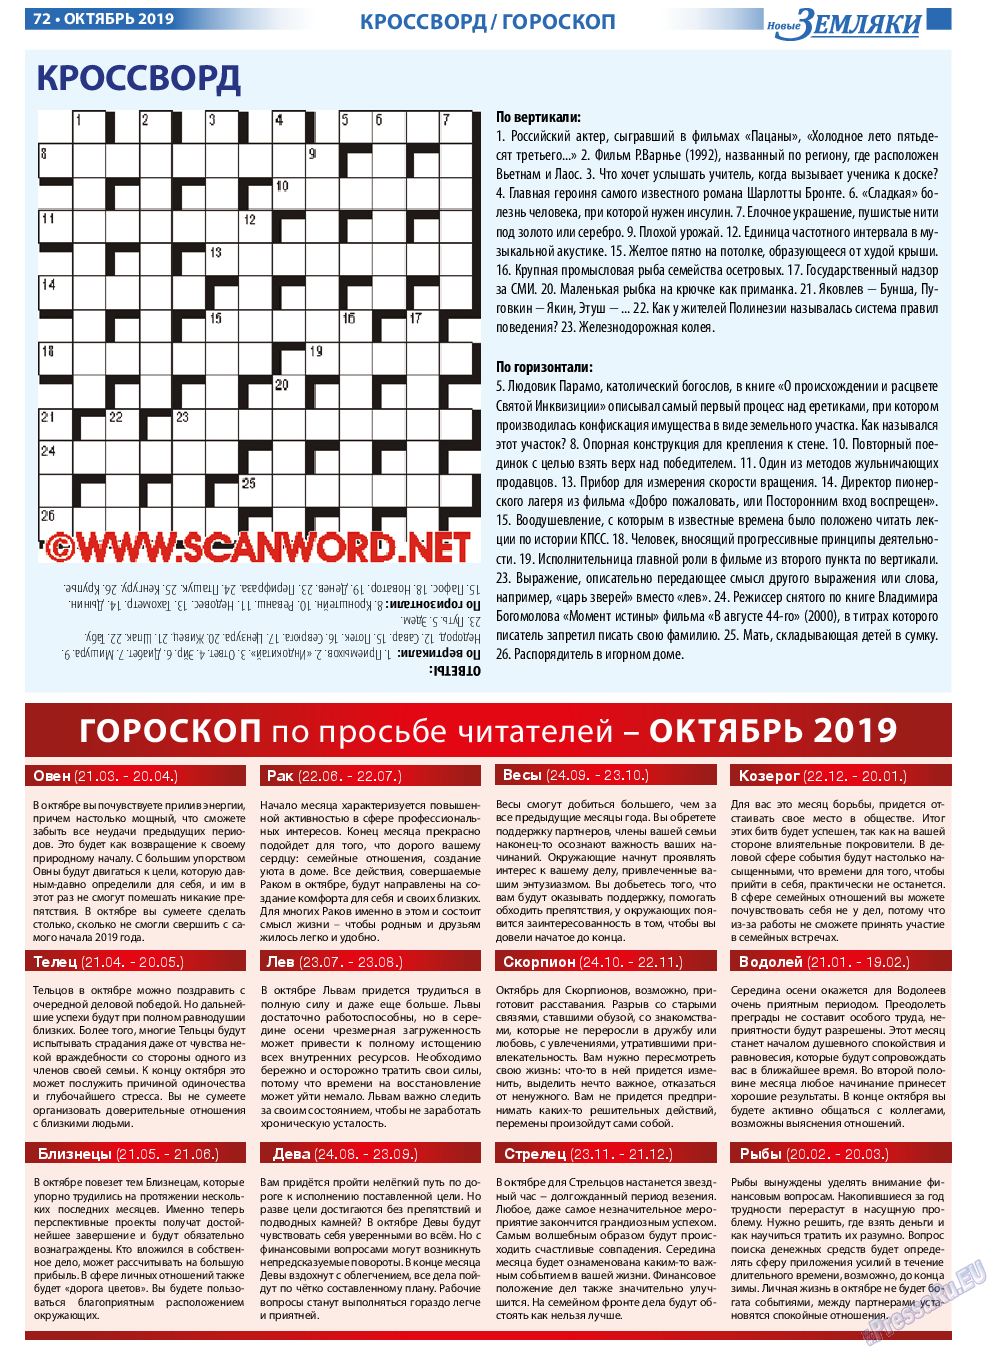 Новые Земляки, газета. 2019 №10 стр.72